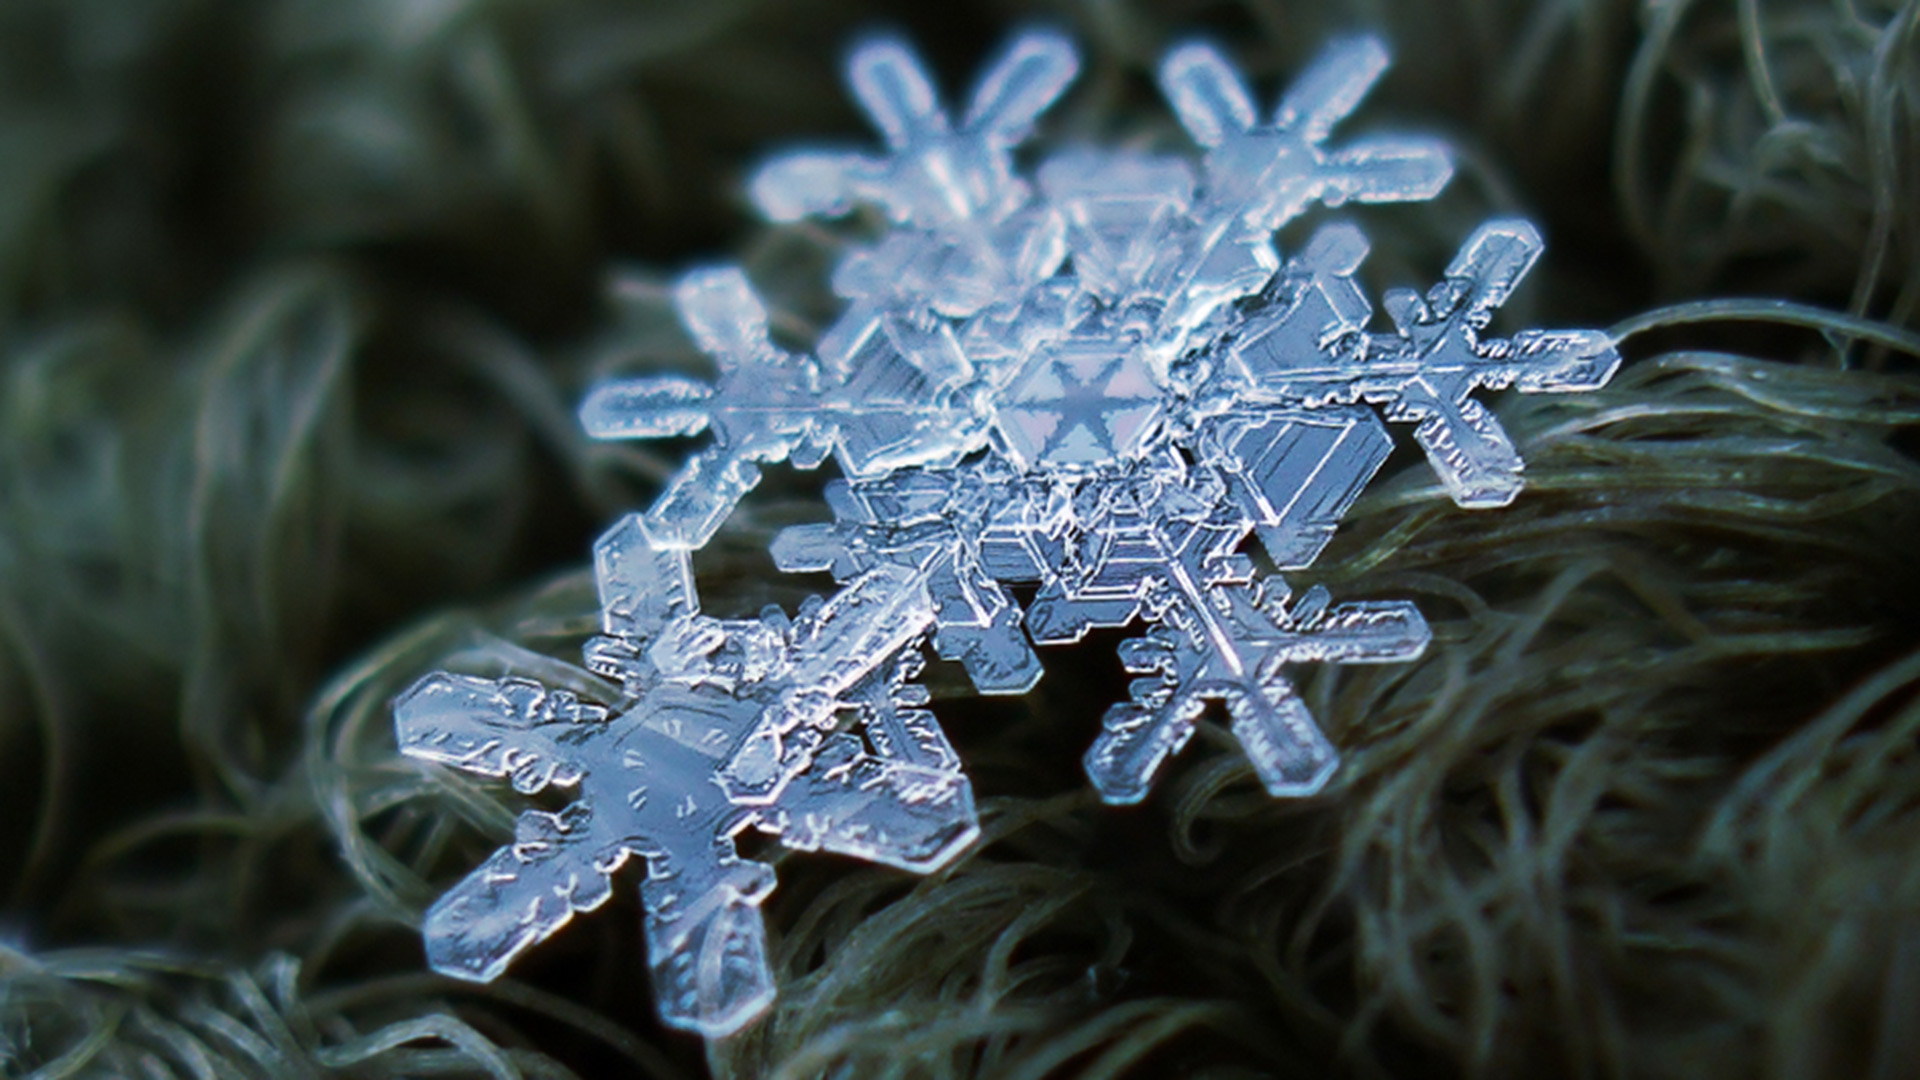 マクロで撮った雪の結晶 写真特集 ロシア ビヨンド